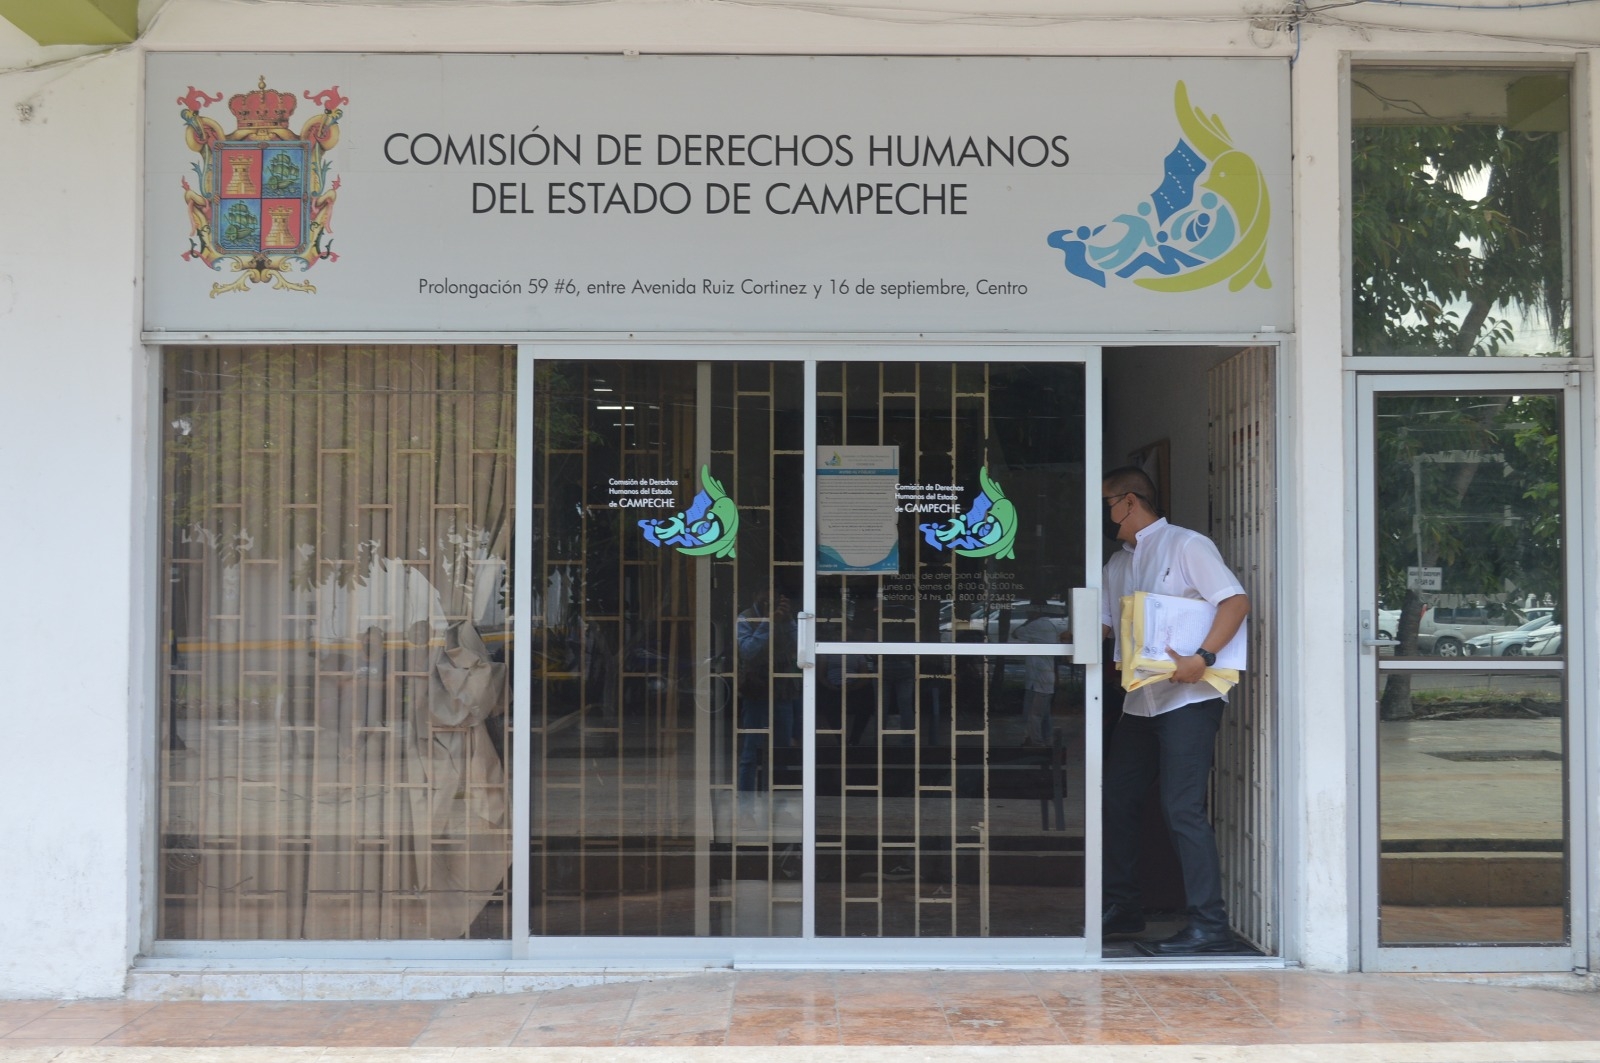 Los casos serán investigados por la Comisión de Derechos Humanos de Campeche